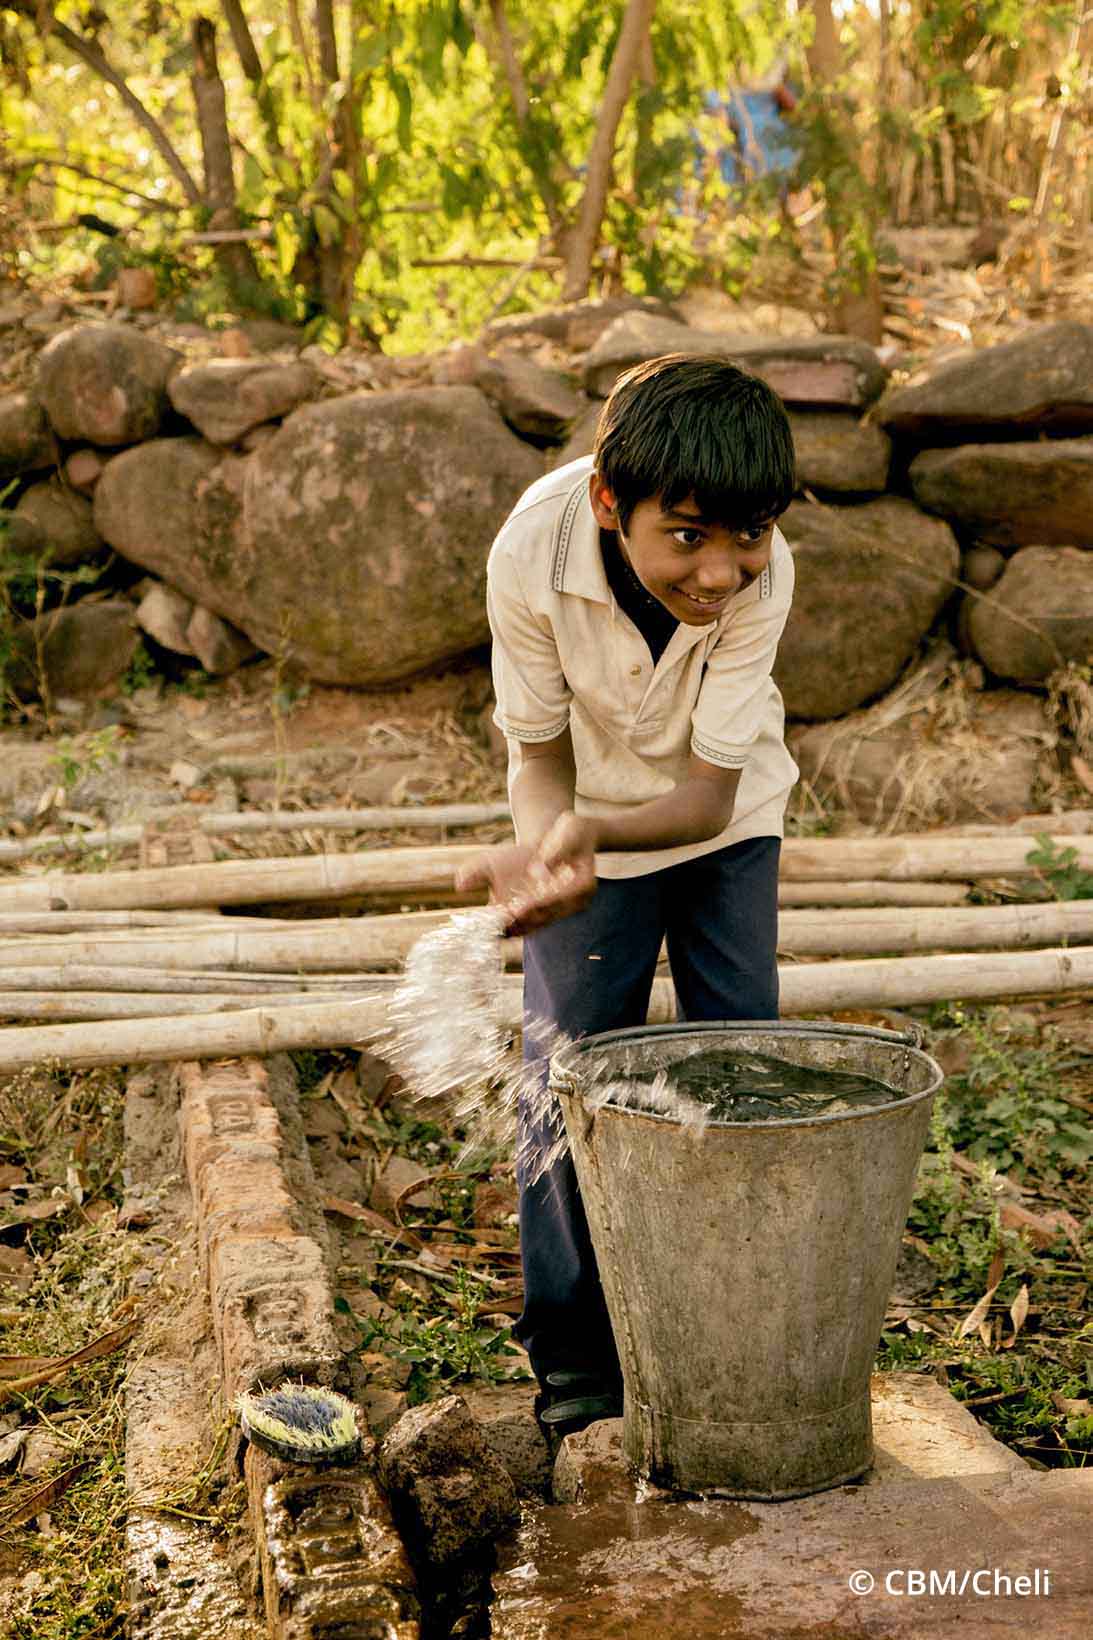 Ein Knabe aus Indien schöpft mit den Händen Wasser aus einem Kessel und lächelt dabei.